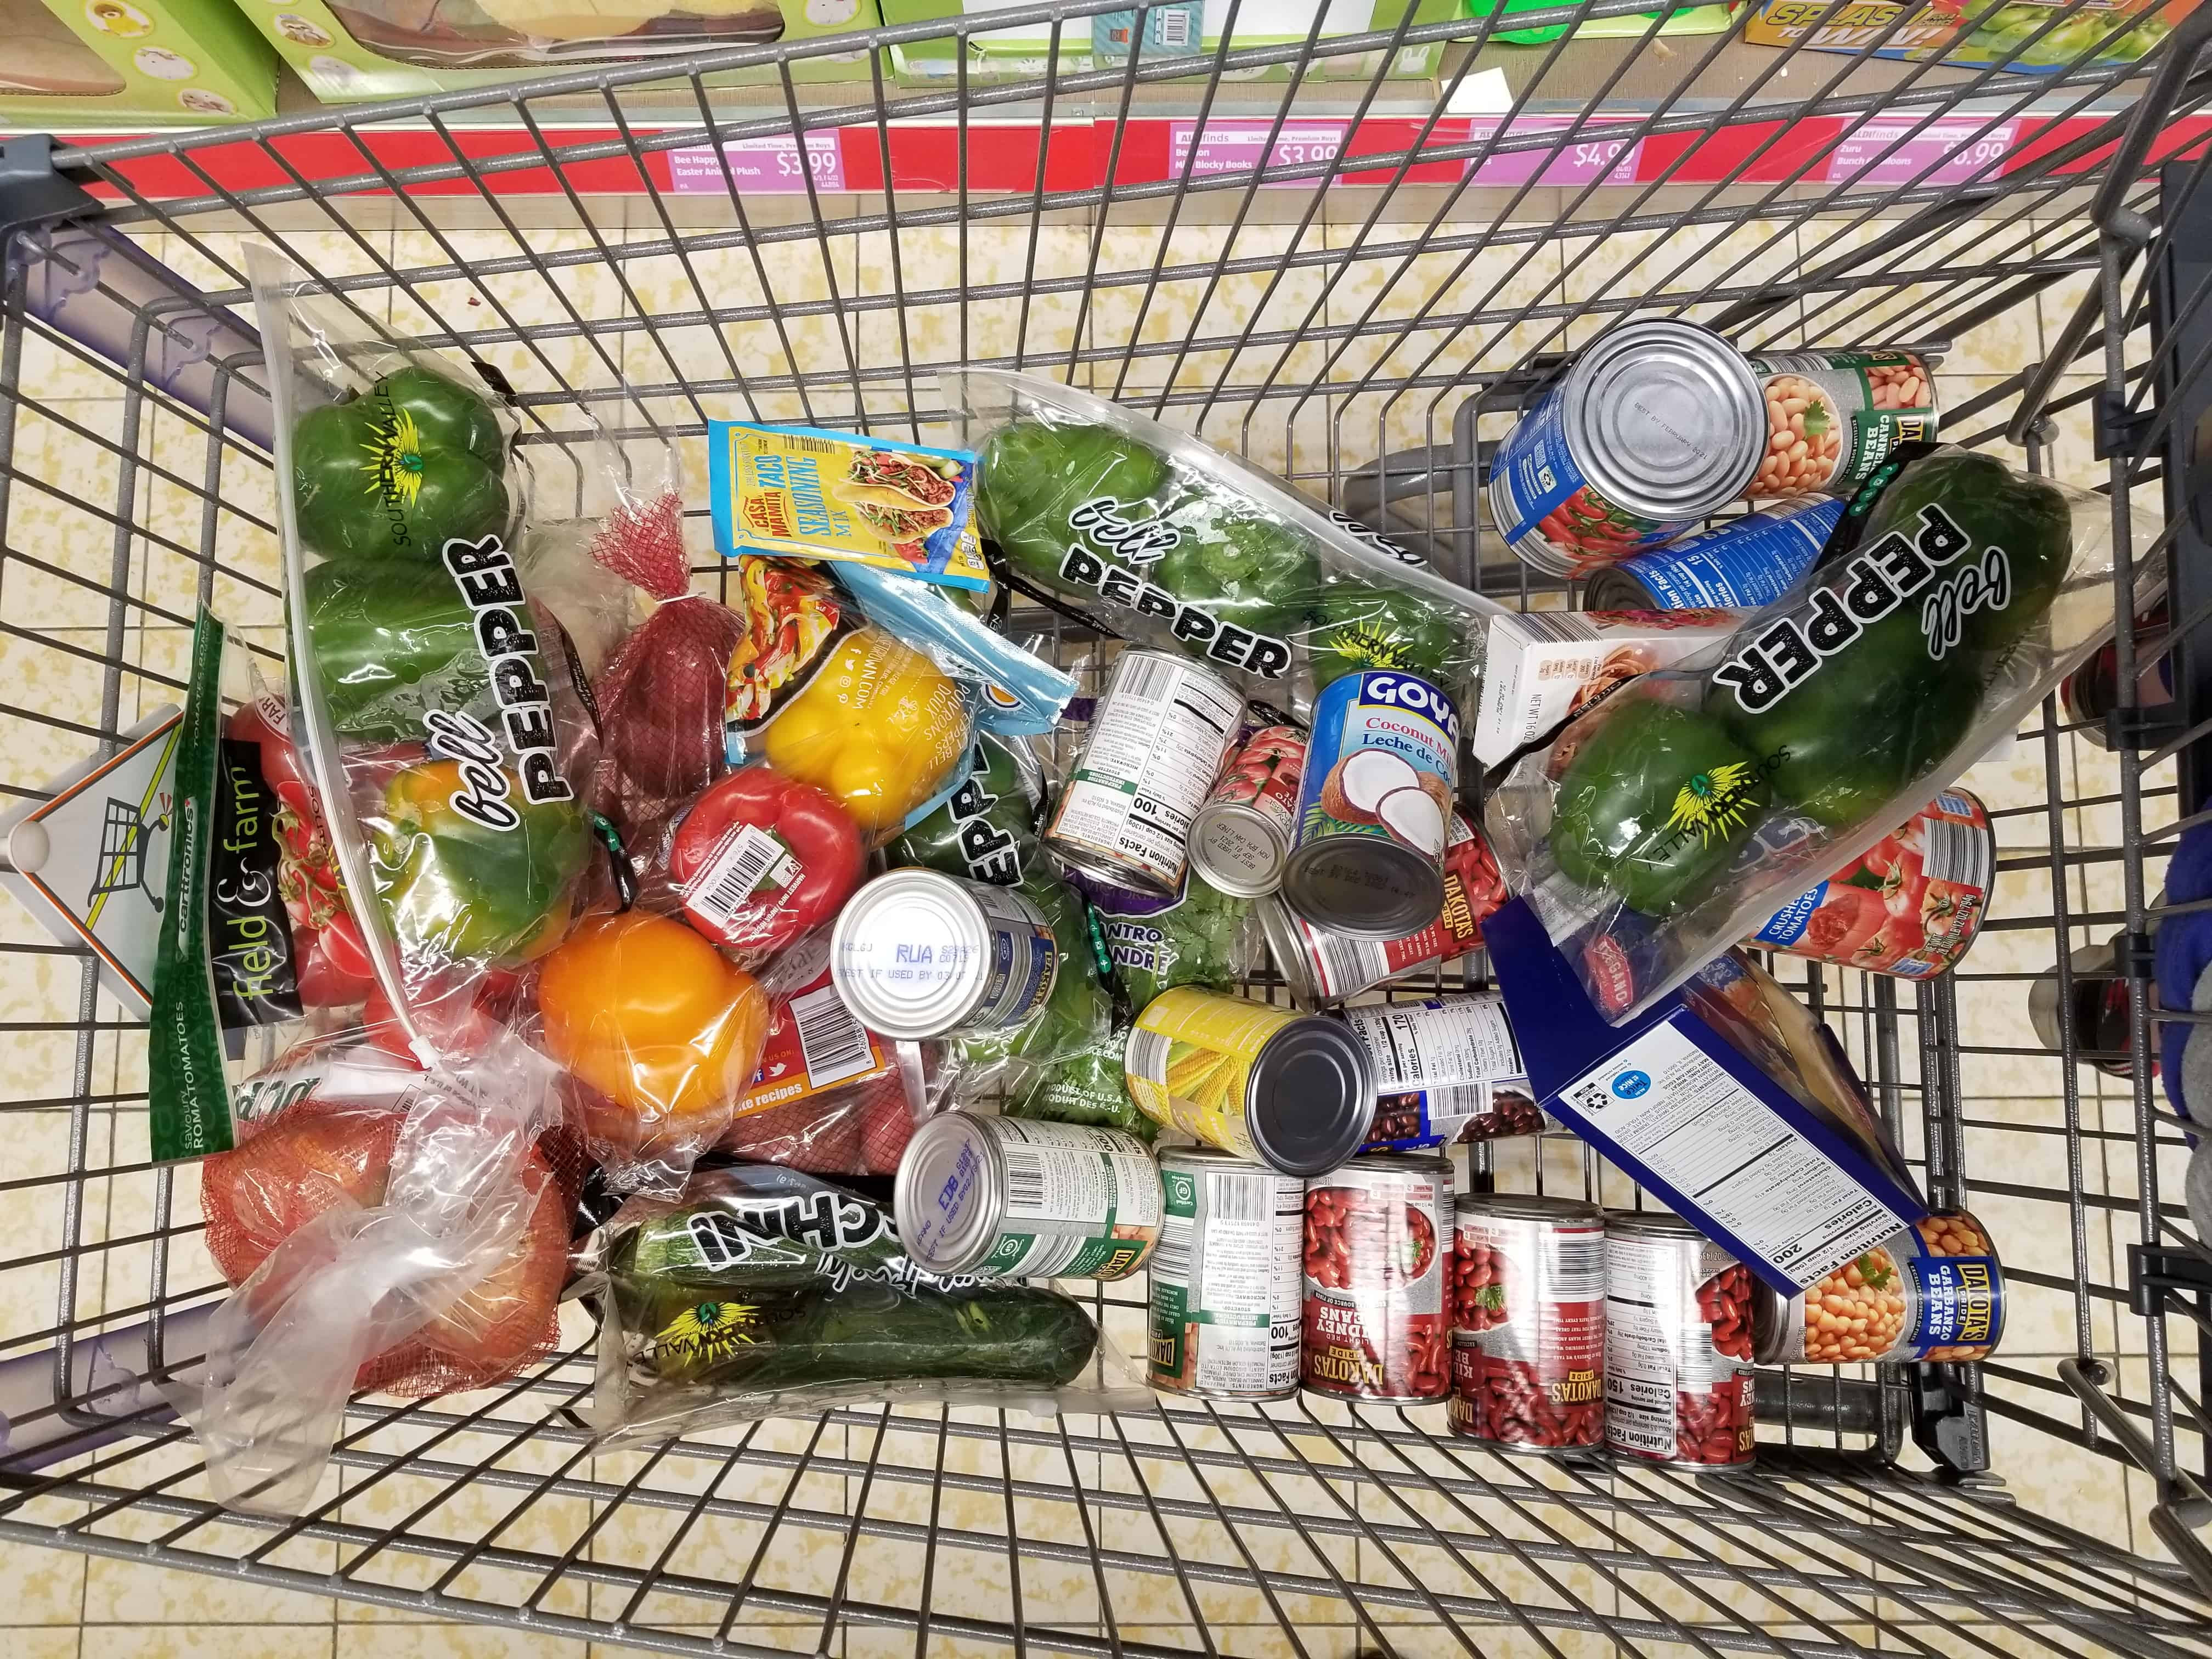 aldi haul grocery cart for vegan meal prep